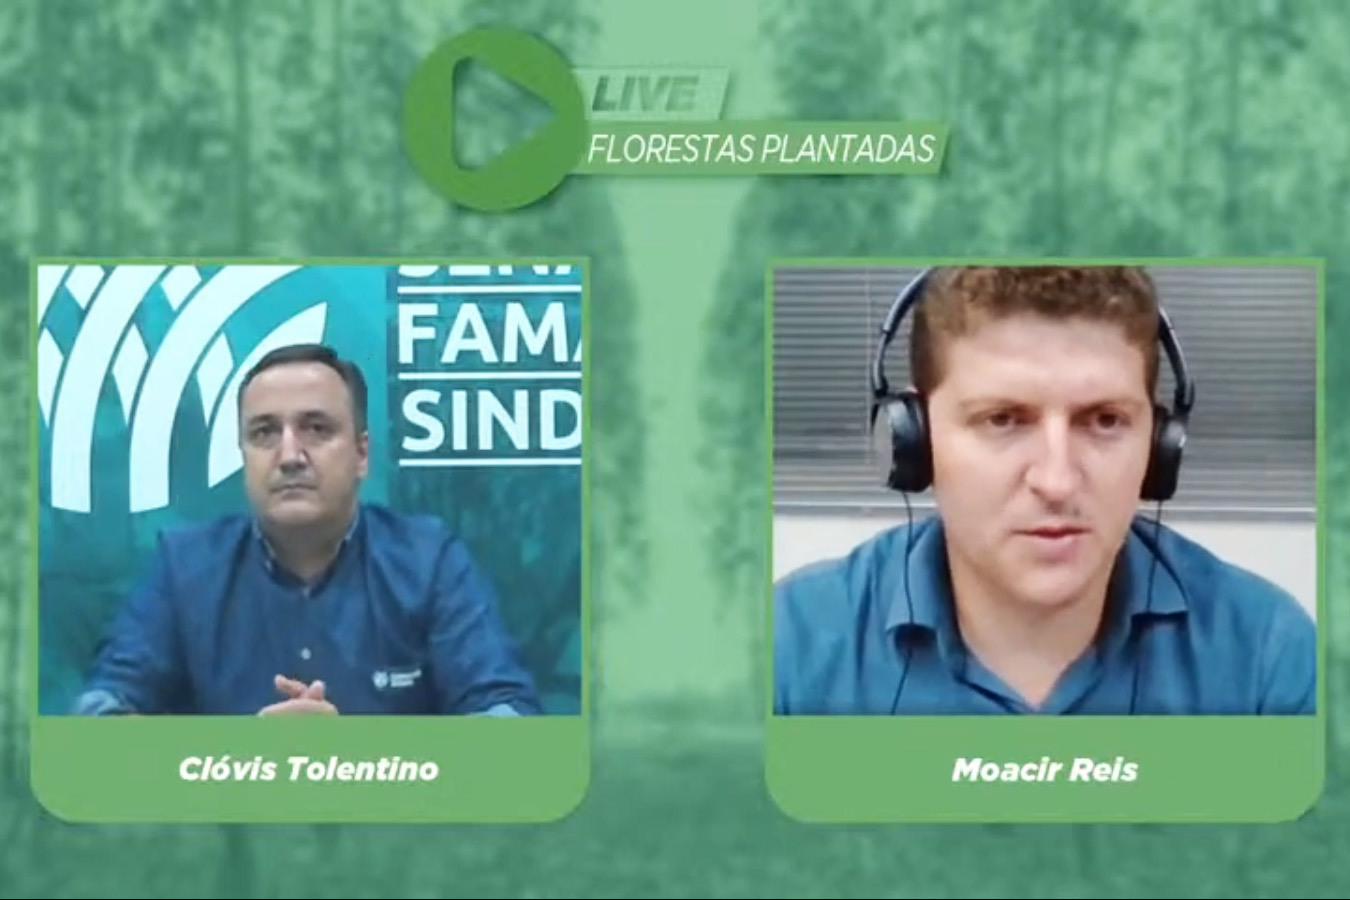 Print Live Florestas Plantadas